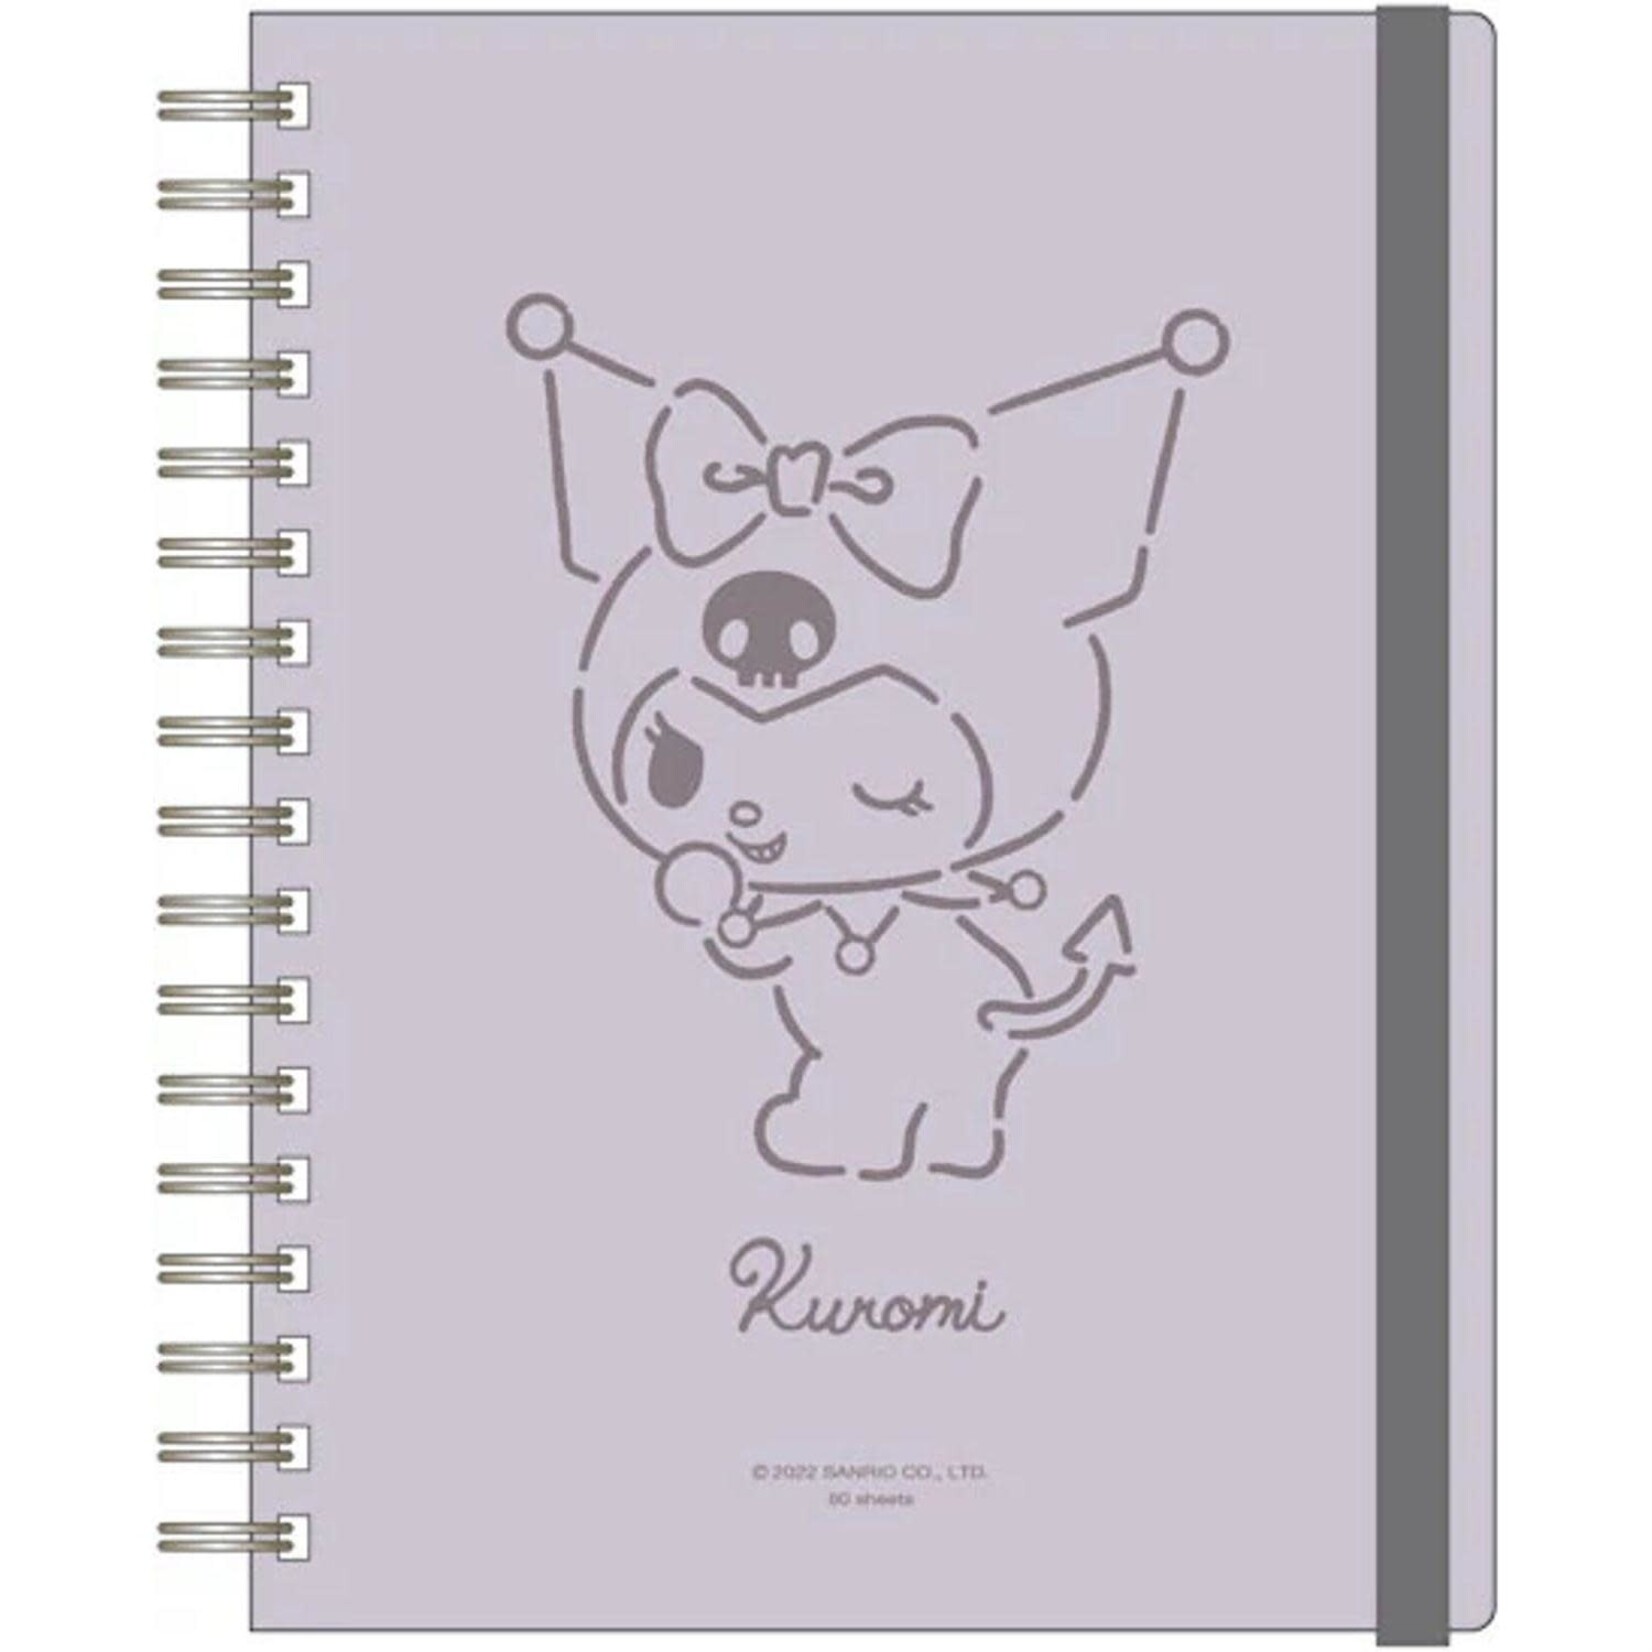 A5 Notebook Calm Kuromi - Toy Joy